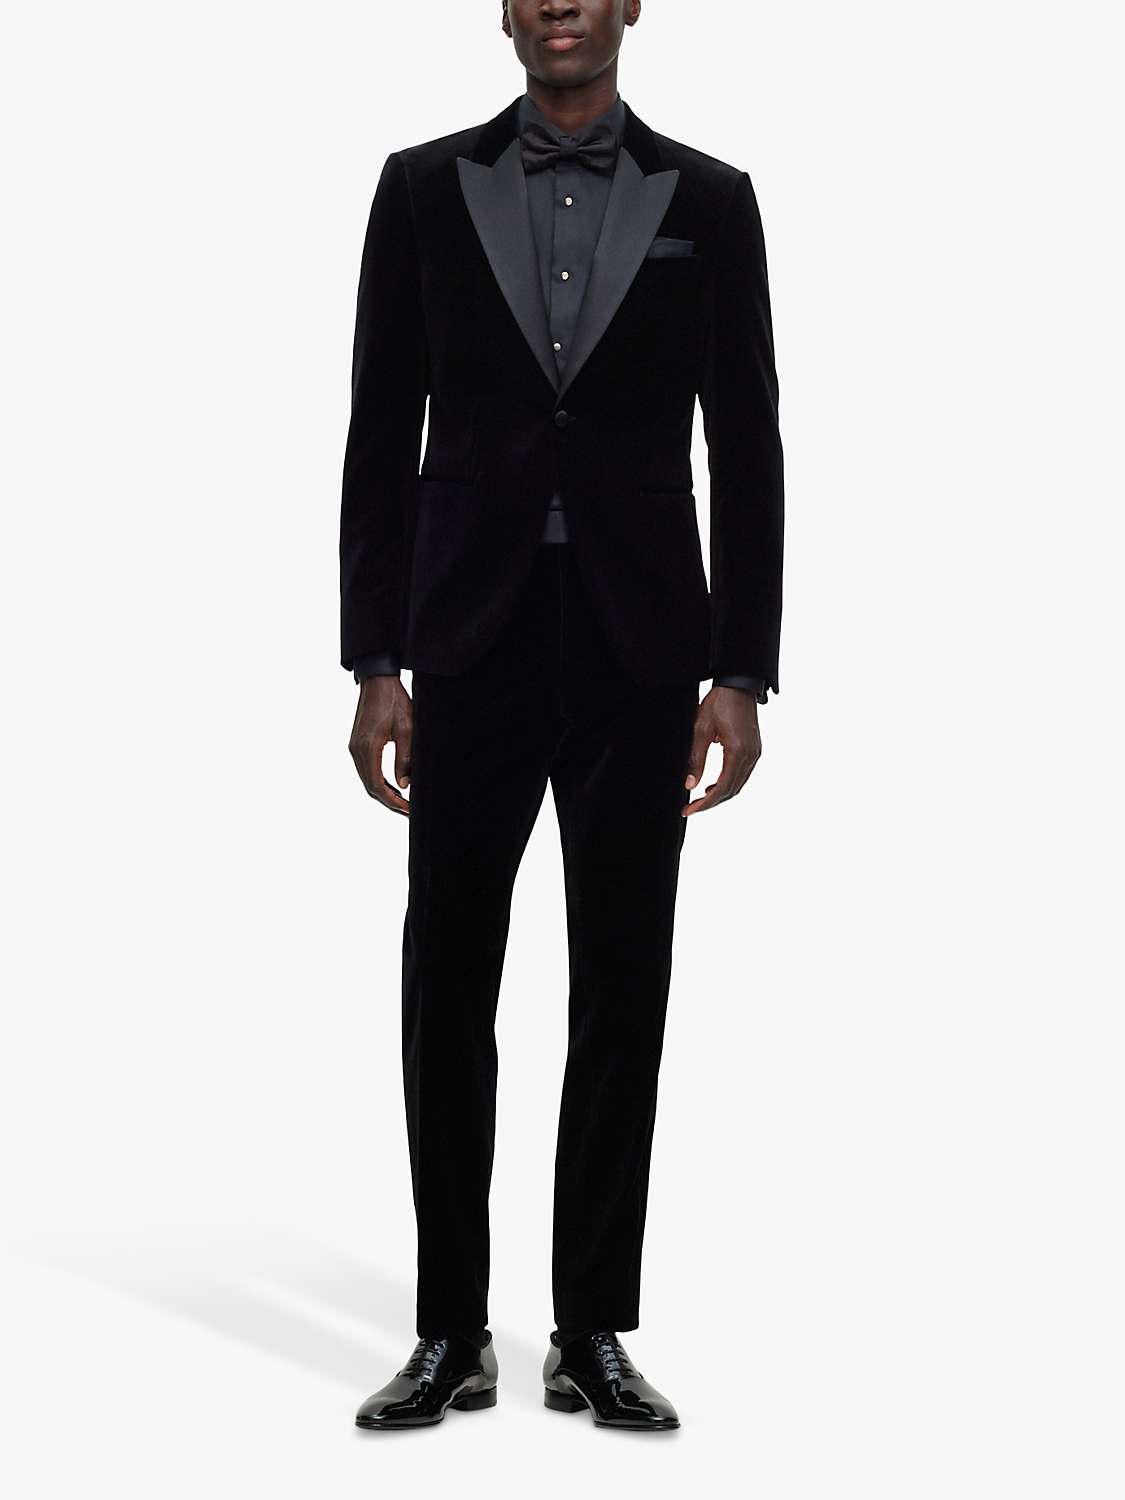 BOSS Hutson Slim Fit Tuxedo Jacket, Black at John Lewis & Partners